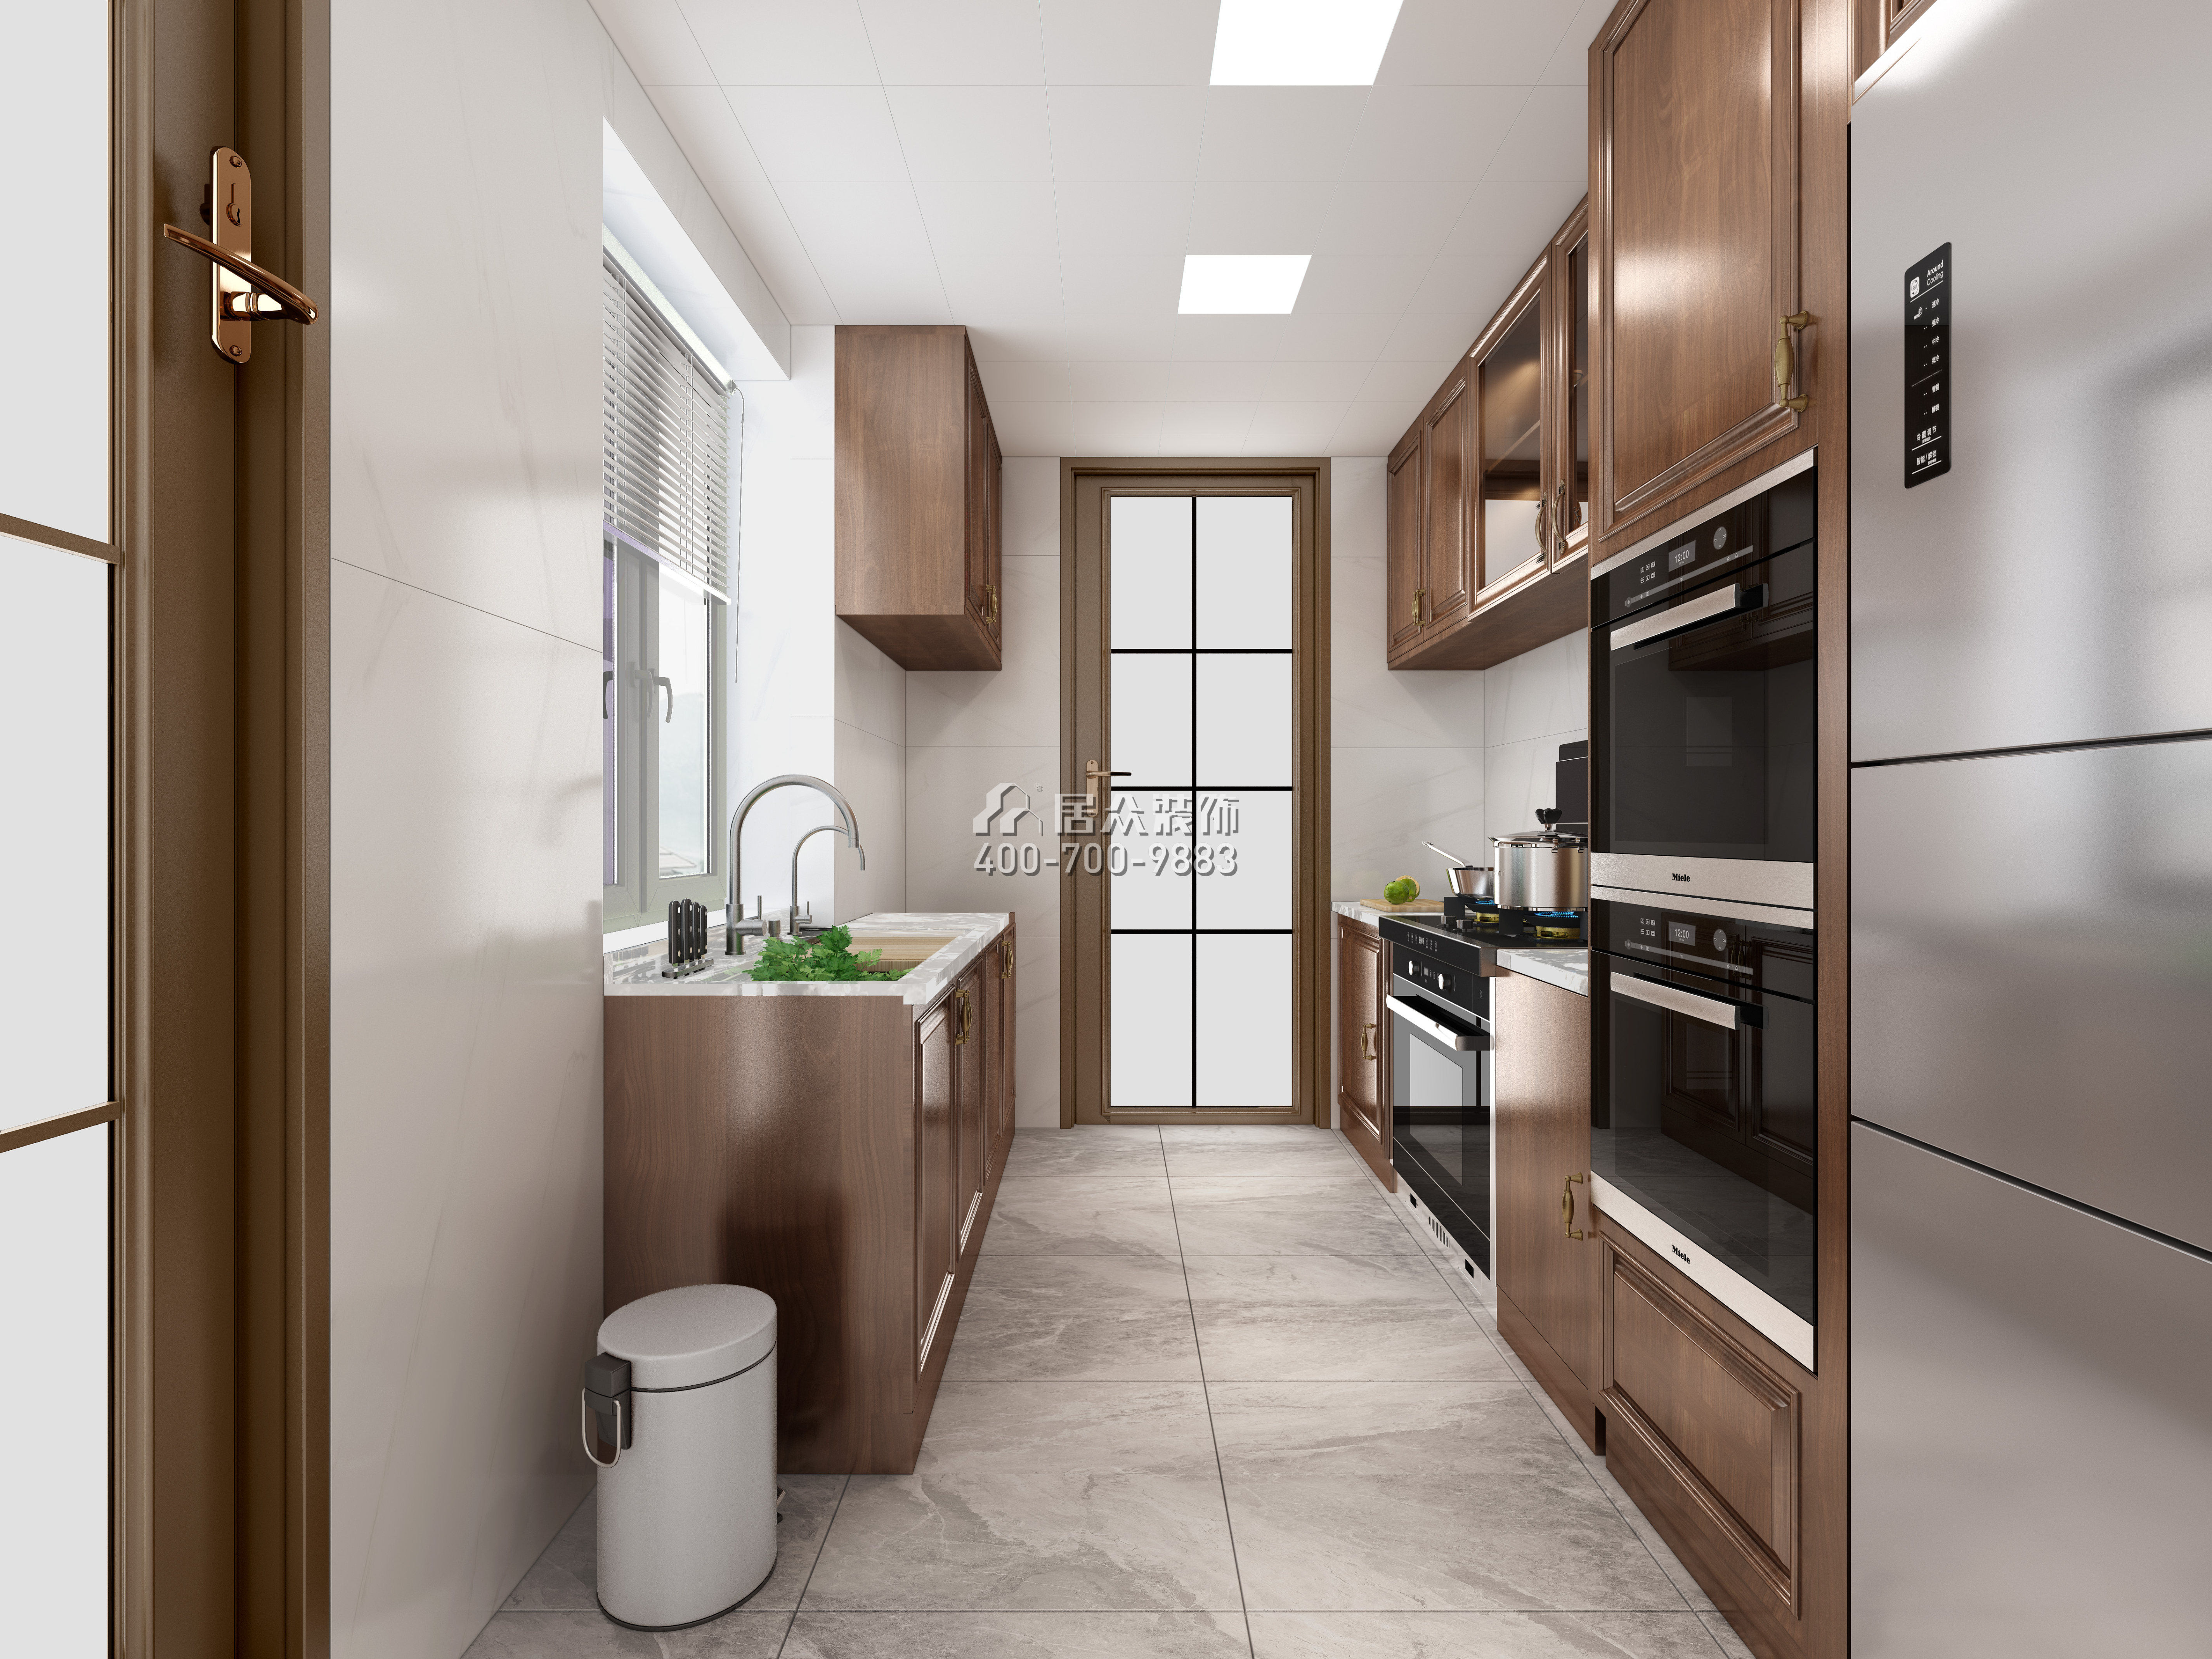 新天国际名苑150平方米中式风格平层户型厨房装修效果图